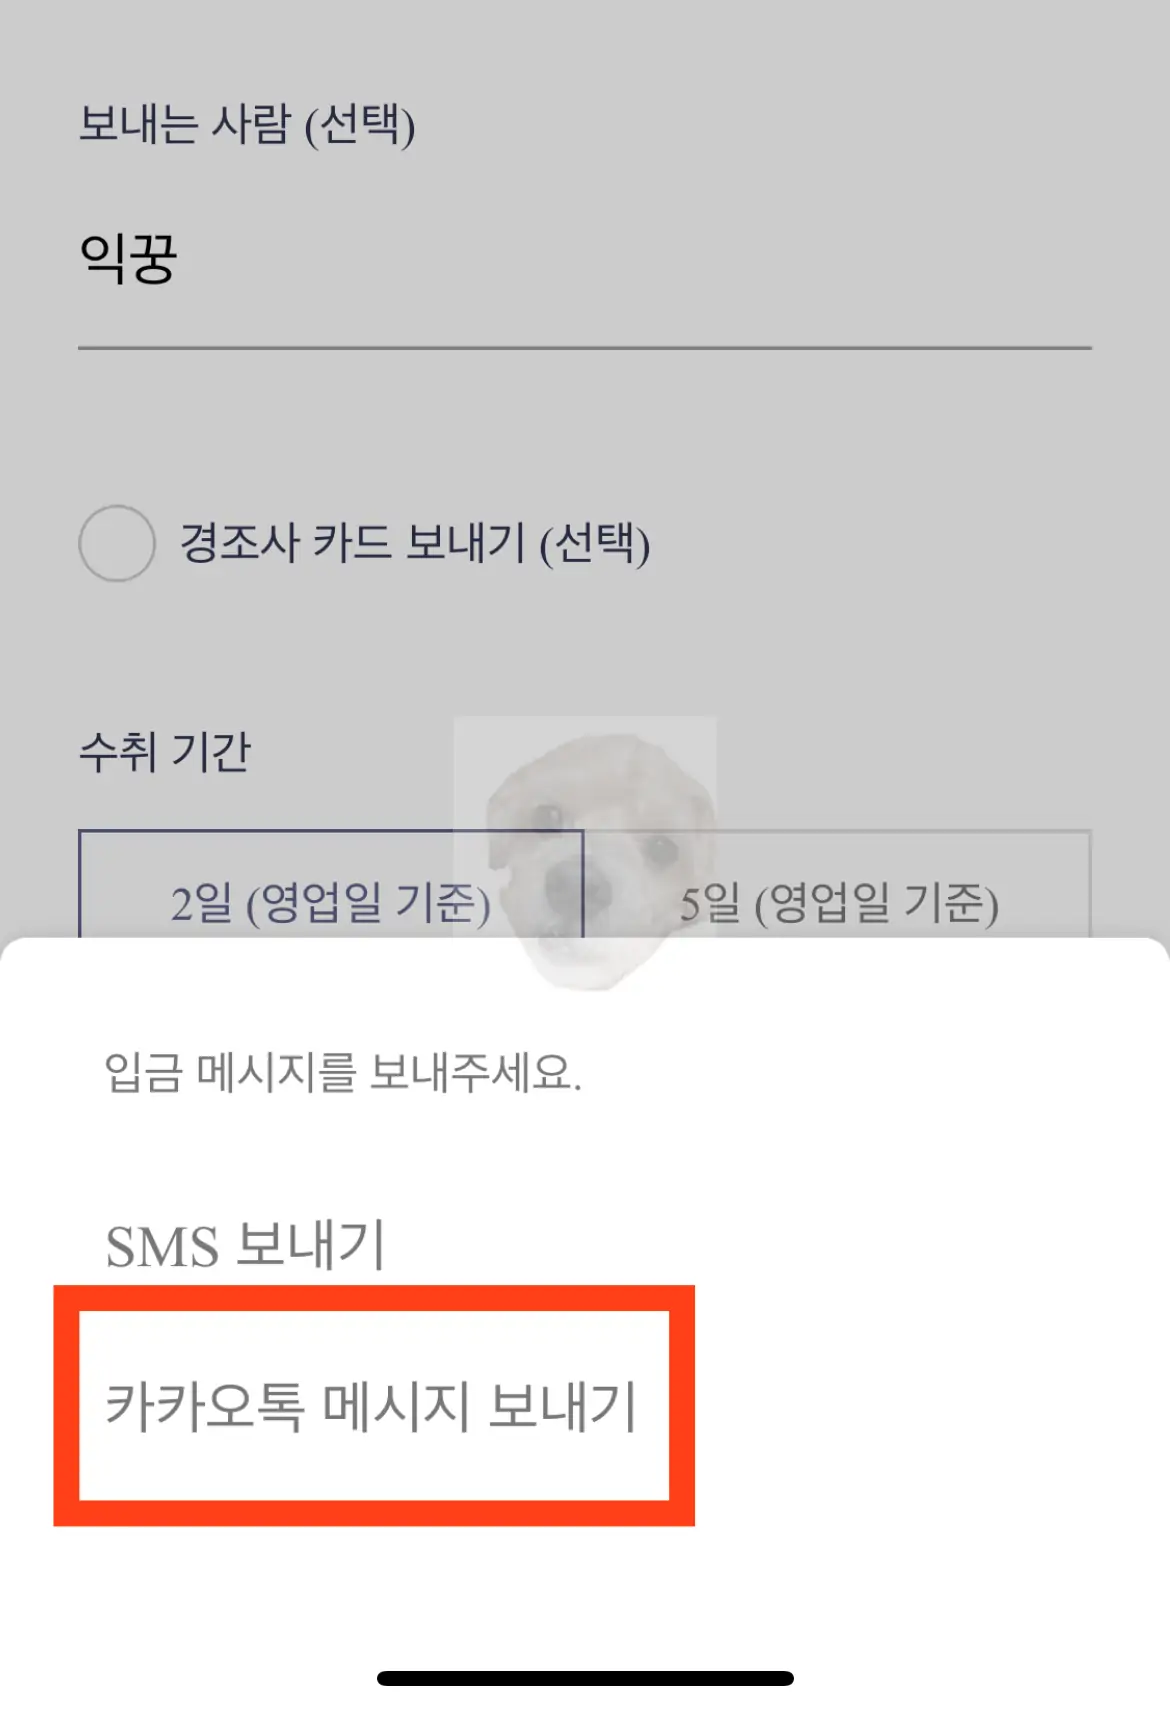 한국투자증권 앱 간편송금 카카오톡 메시지 보내는 방법